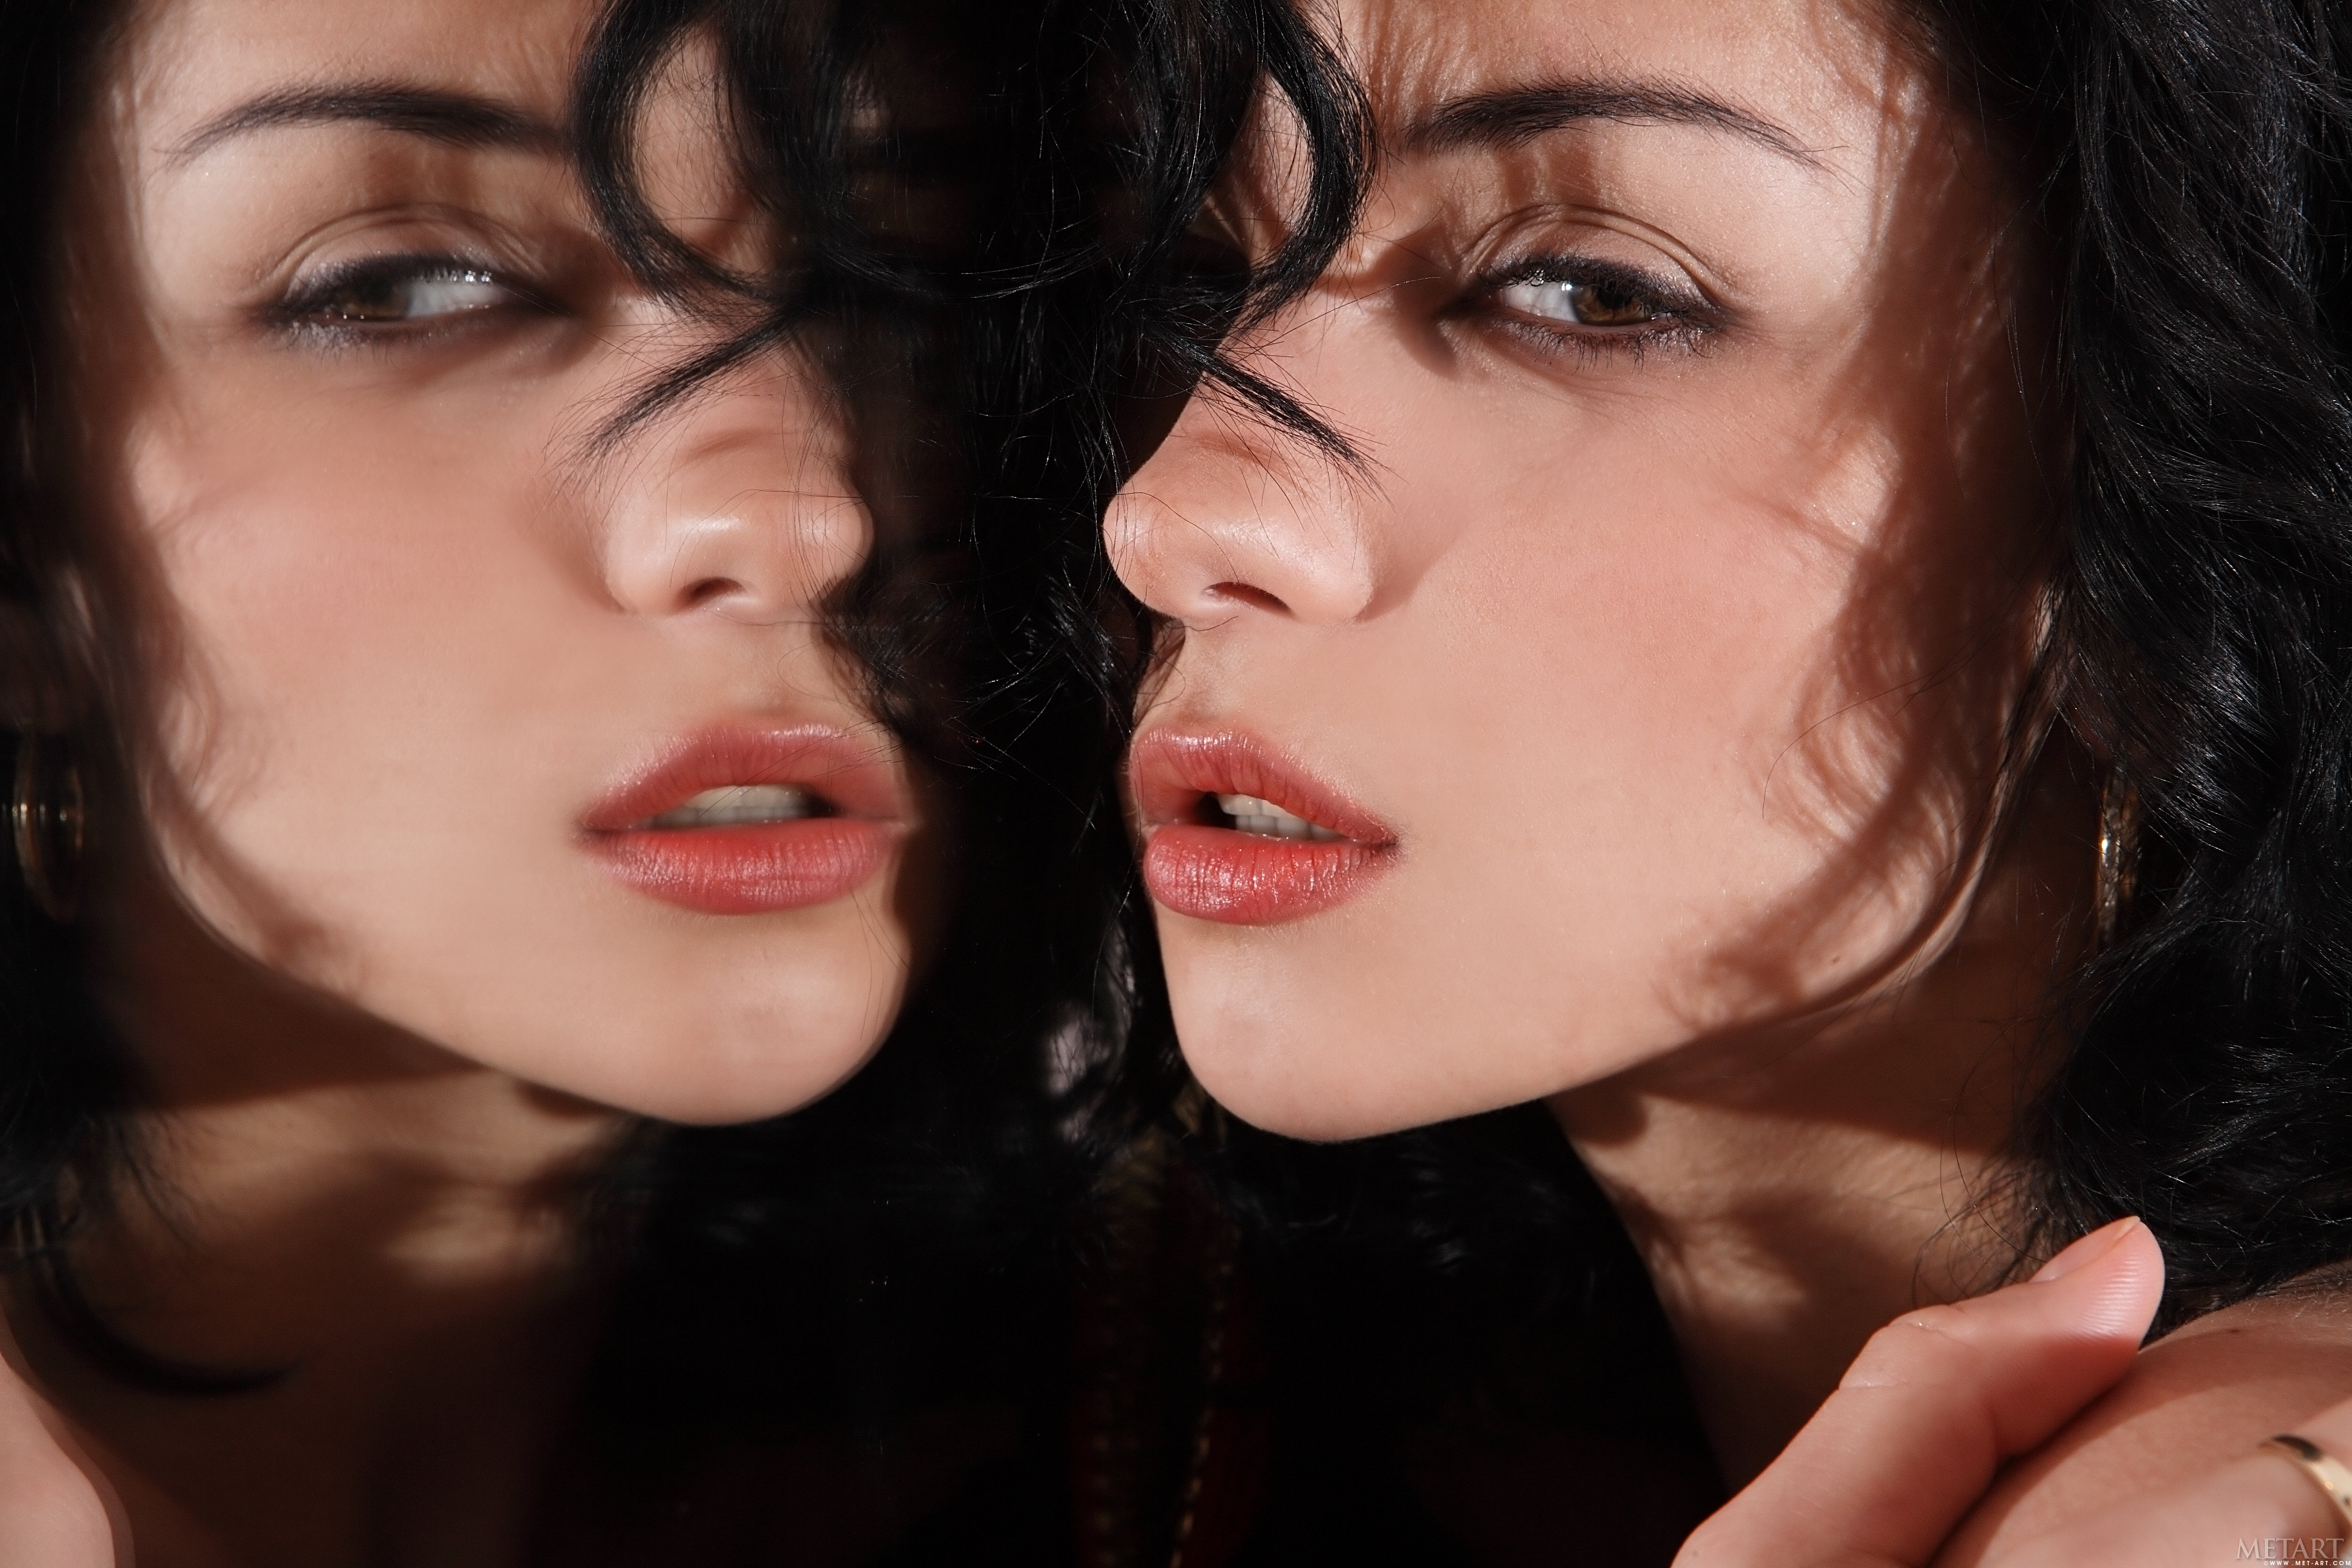 People 4992x3328 Katie Fey dark hair women Ukrainian women face mirror reflection sensual gaze juicy lips closeup MetArt model brunette